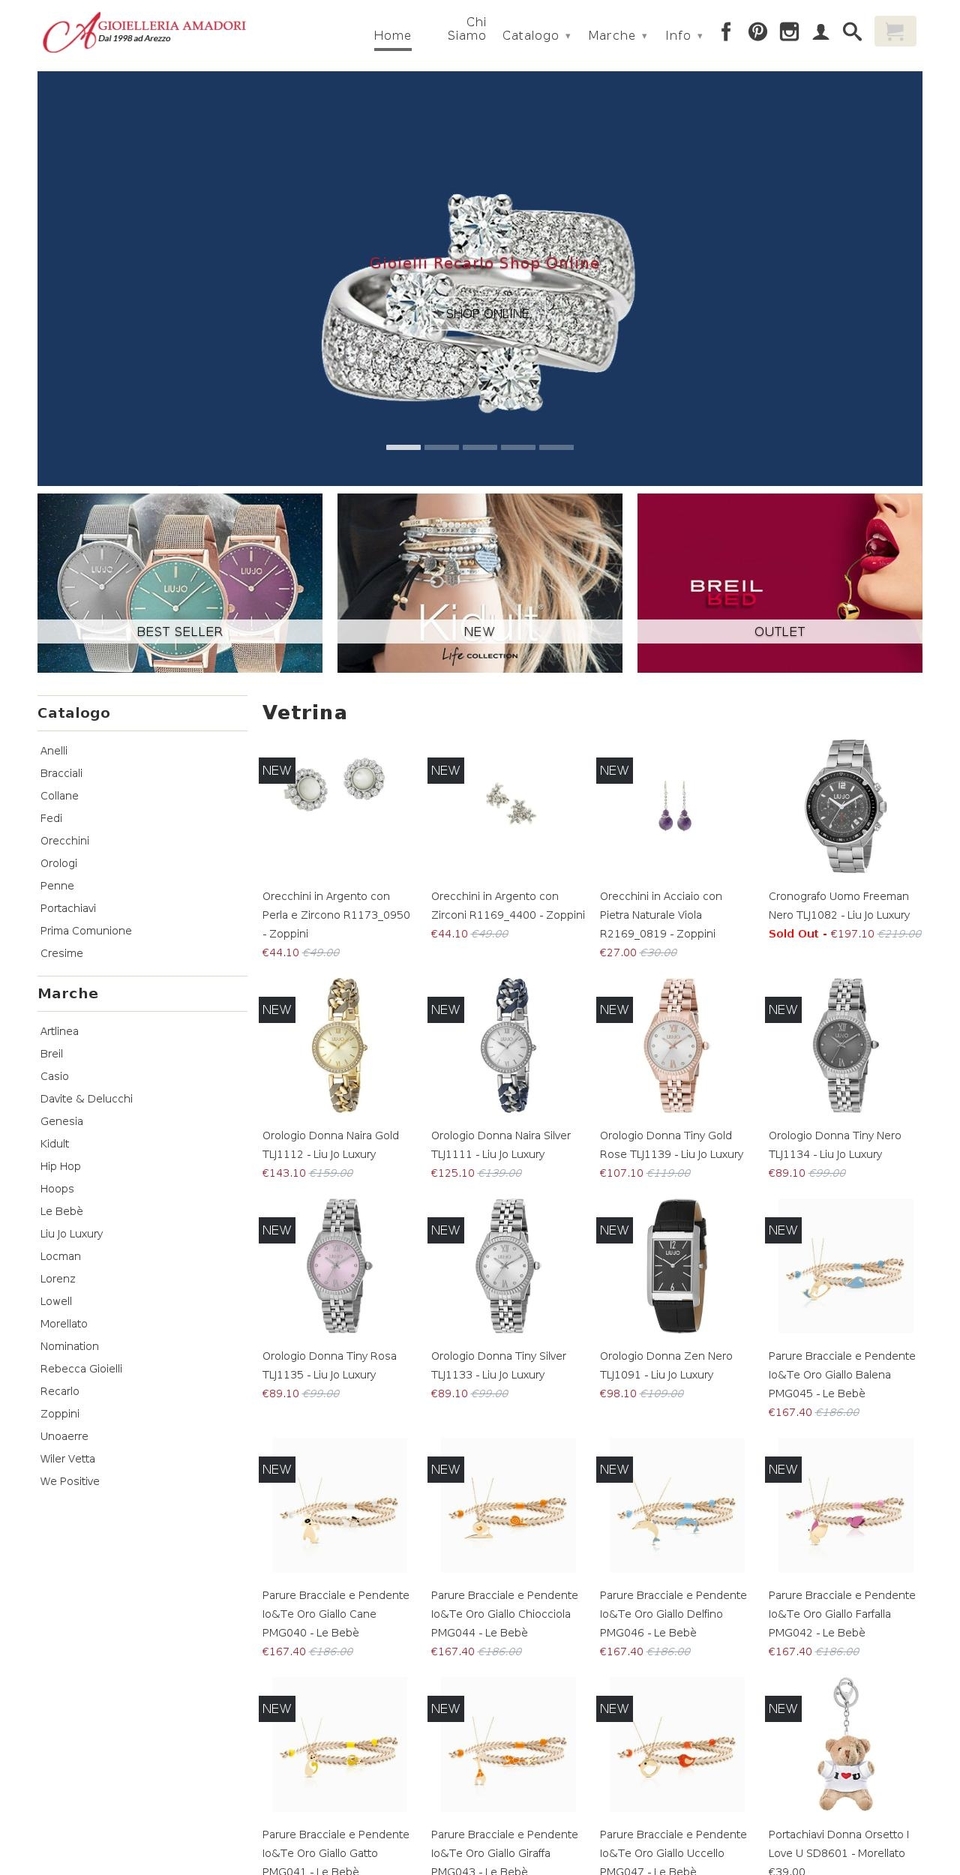 gioielleria-amadori.com shopify website screenshot